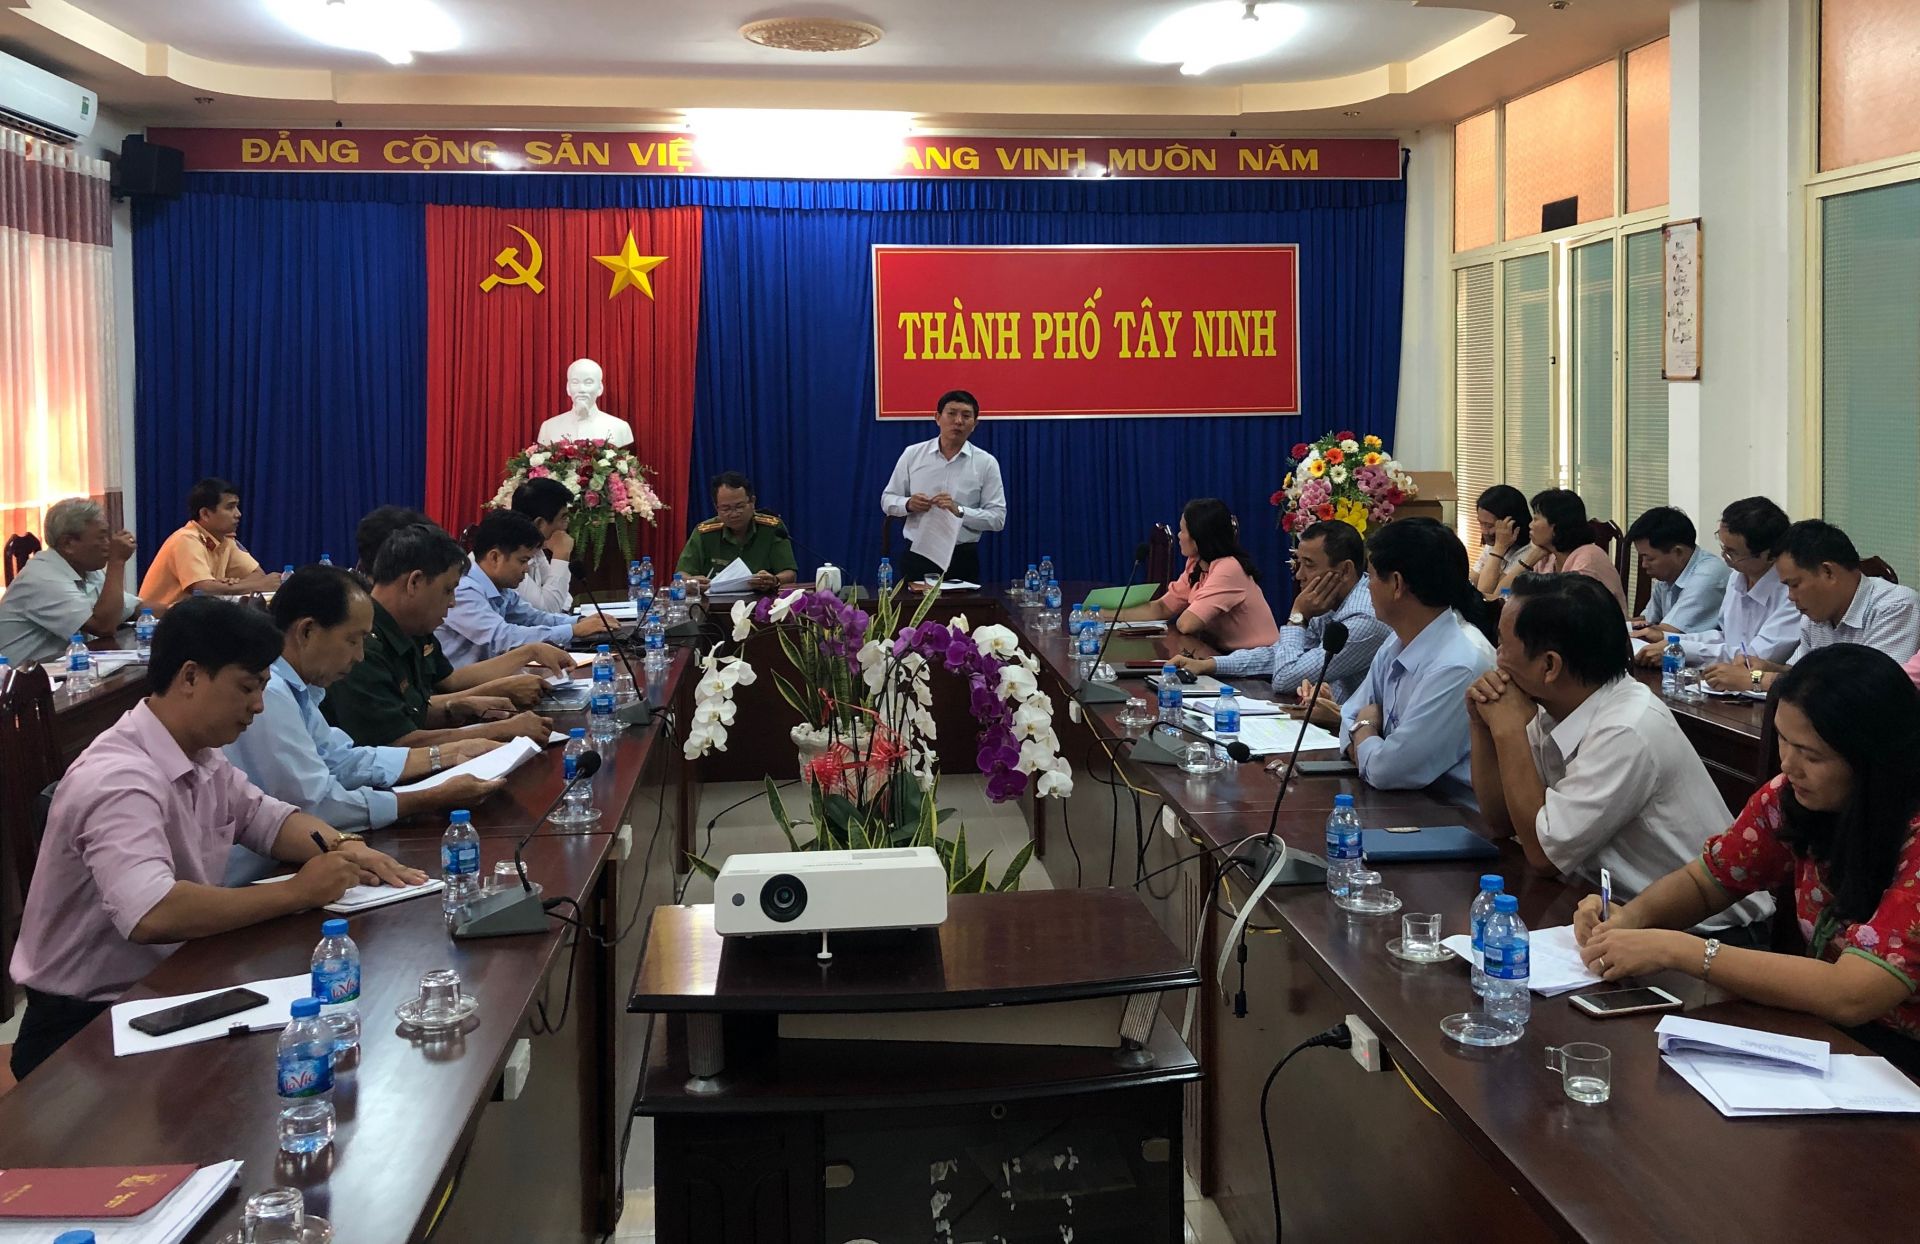 Điểm báo in Tây Ninh ngày 19.01.2019